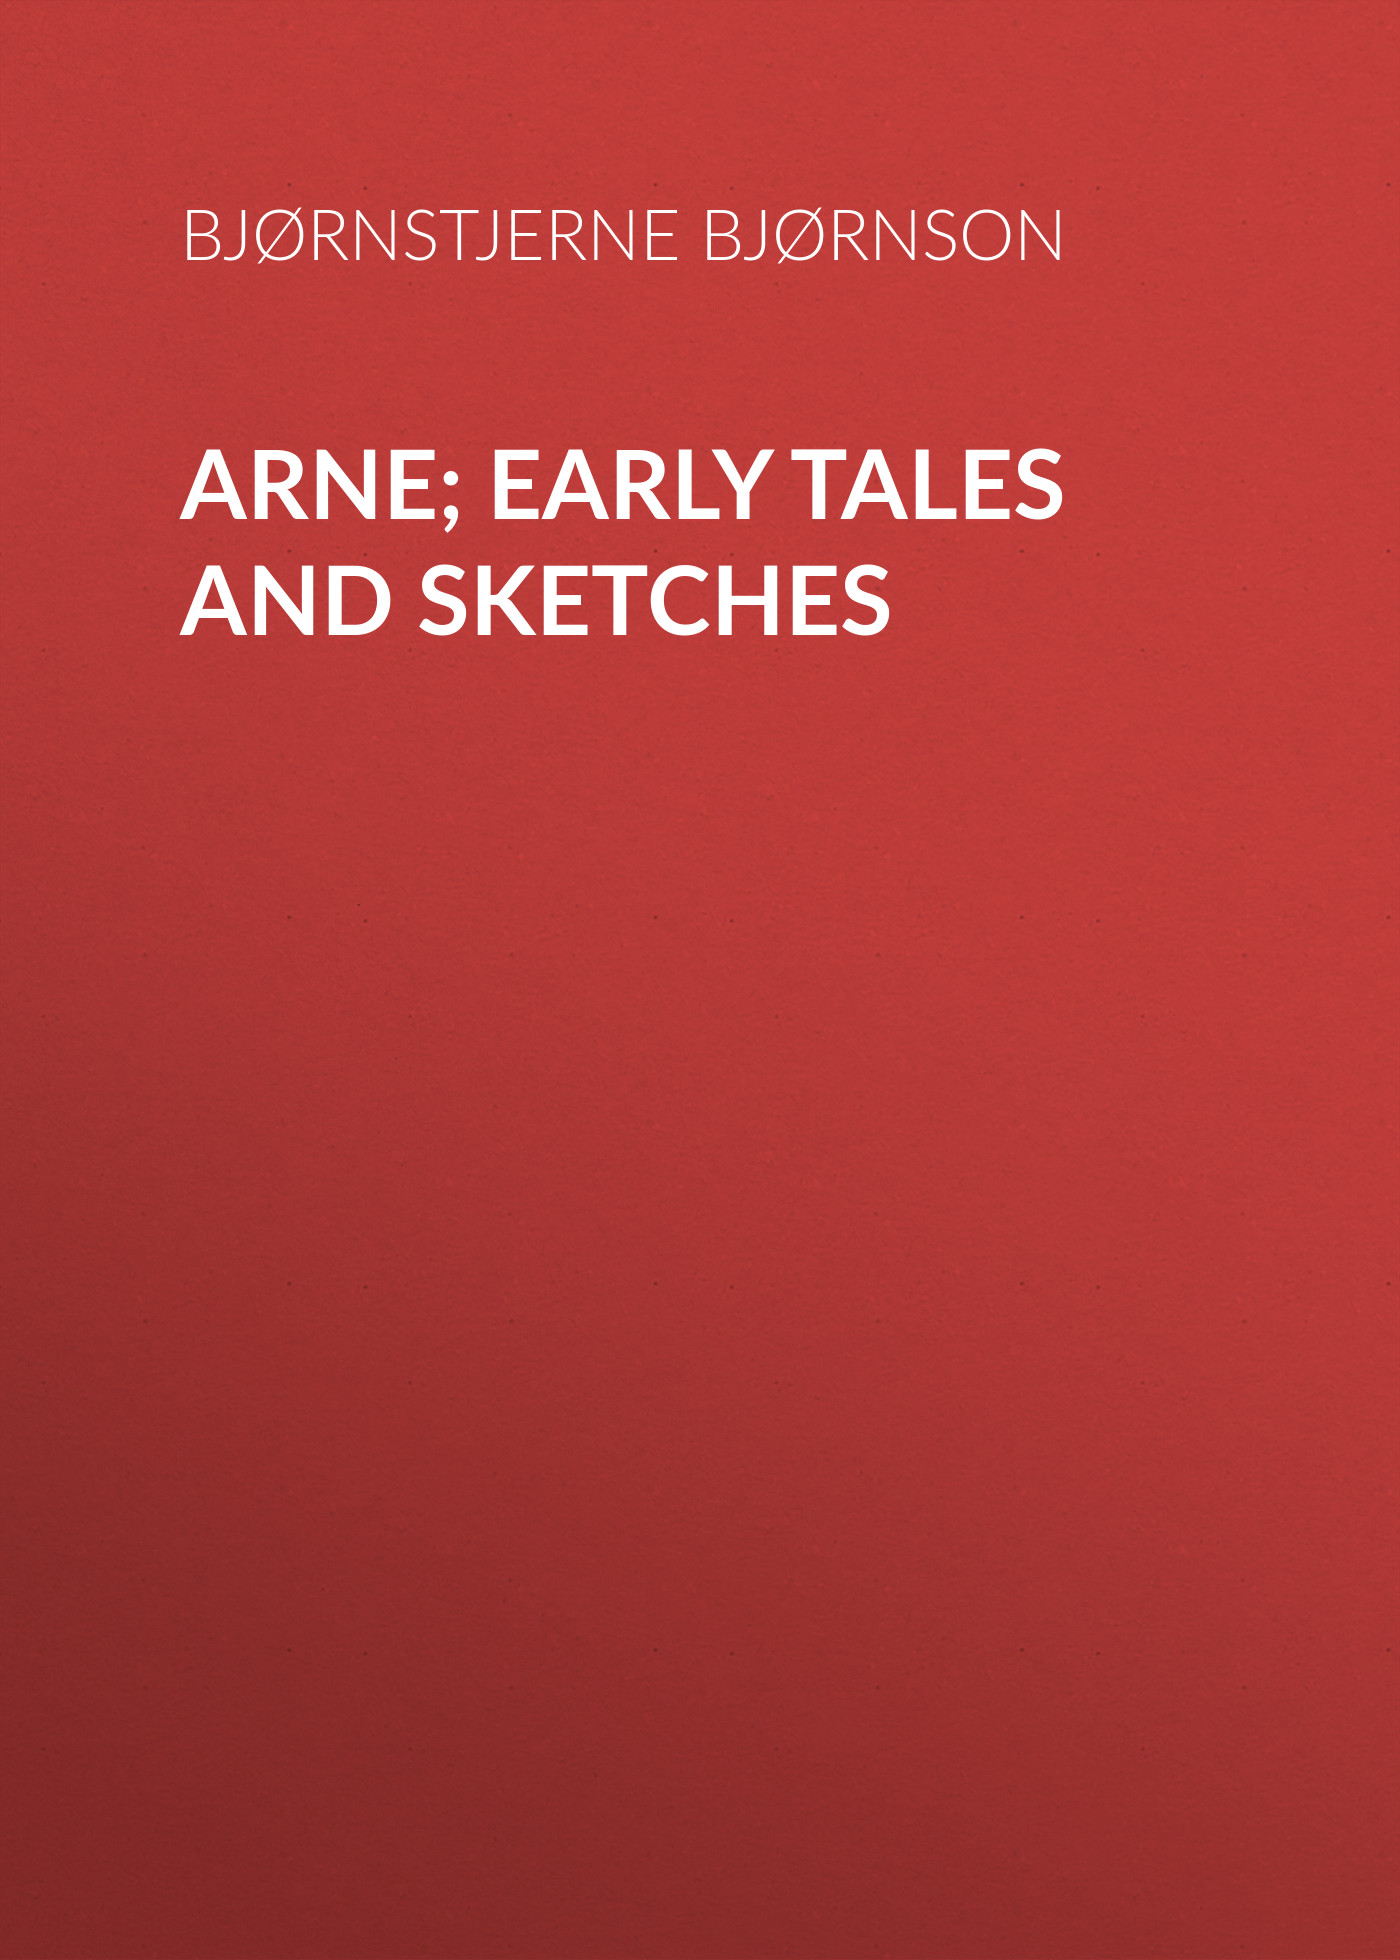 Книга Arne; Early Tales and Sketches из серии , созданная Bjørnstjerne Bjørnson, может относится к жанру Зарубежная старинная литература, Зарубежная классика. Стоимость электронной книги Arne; Early Tales and Sketches с идентификатором 24178564 составляет 0 руб.